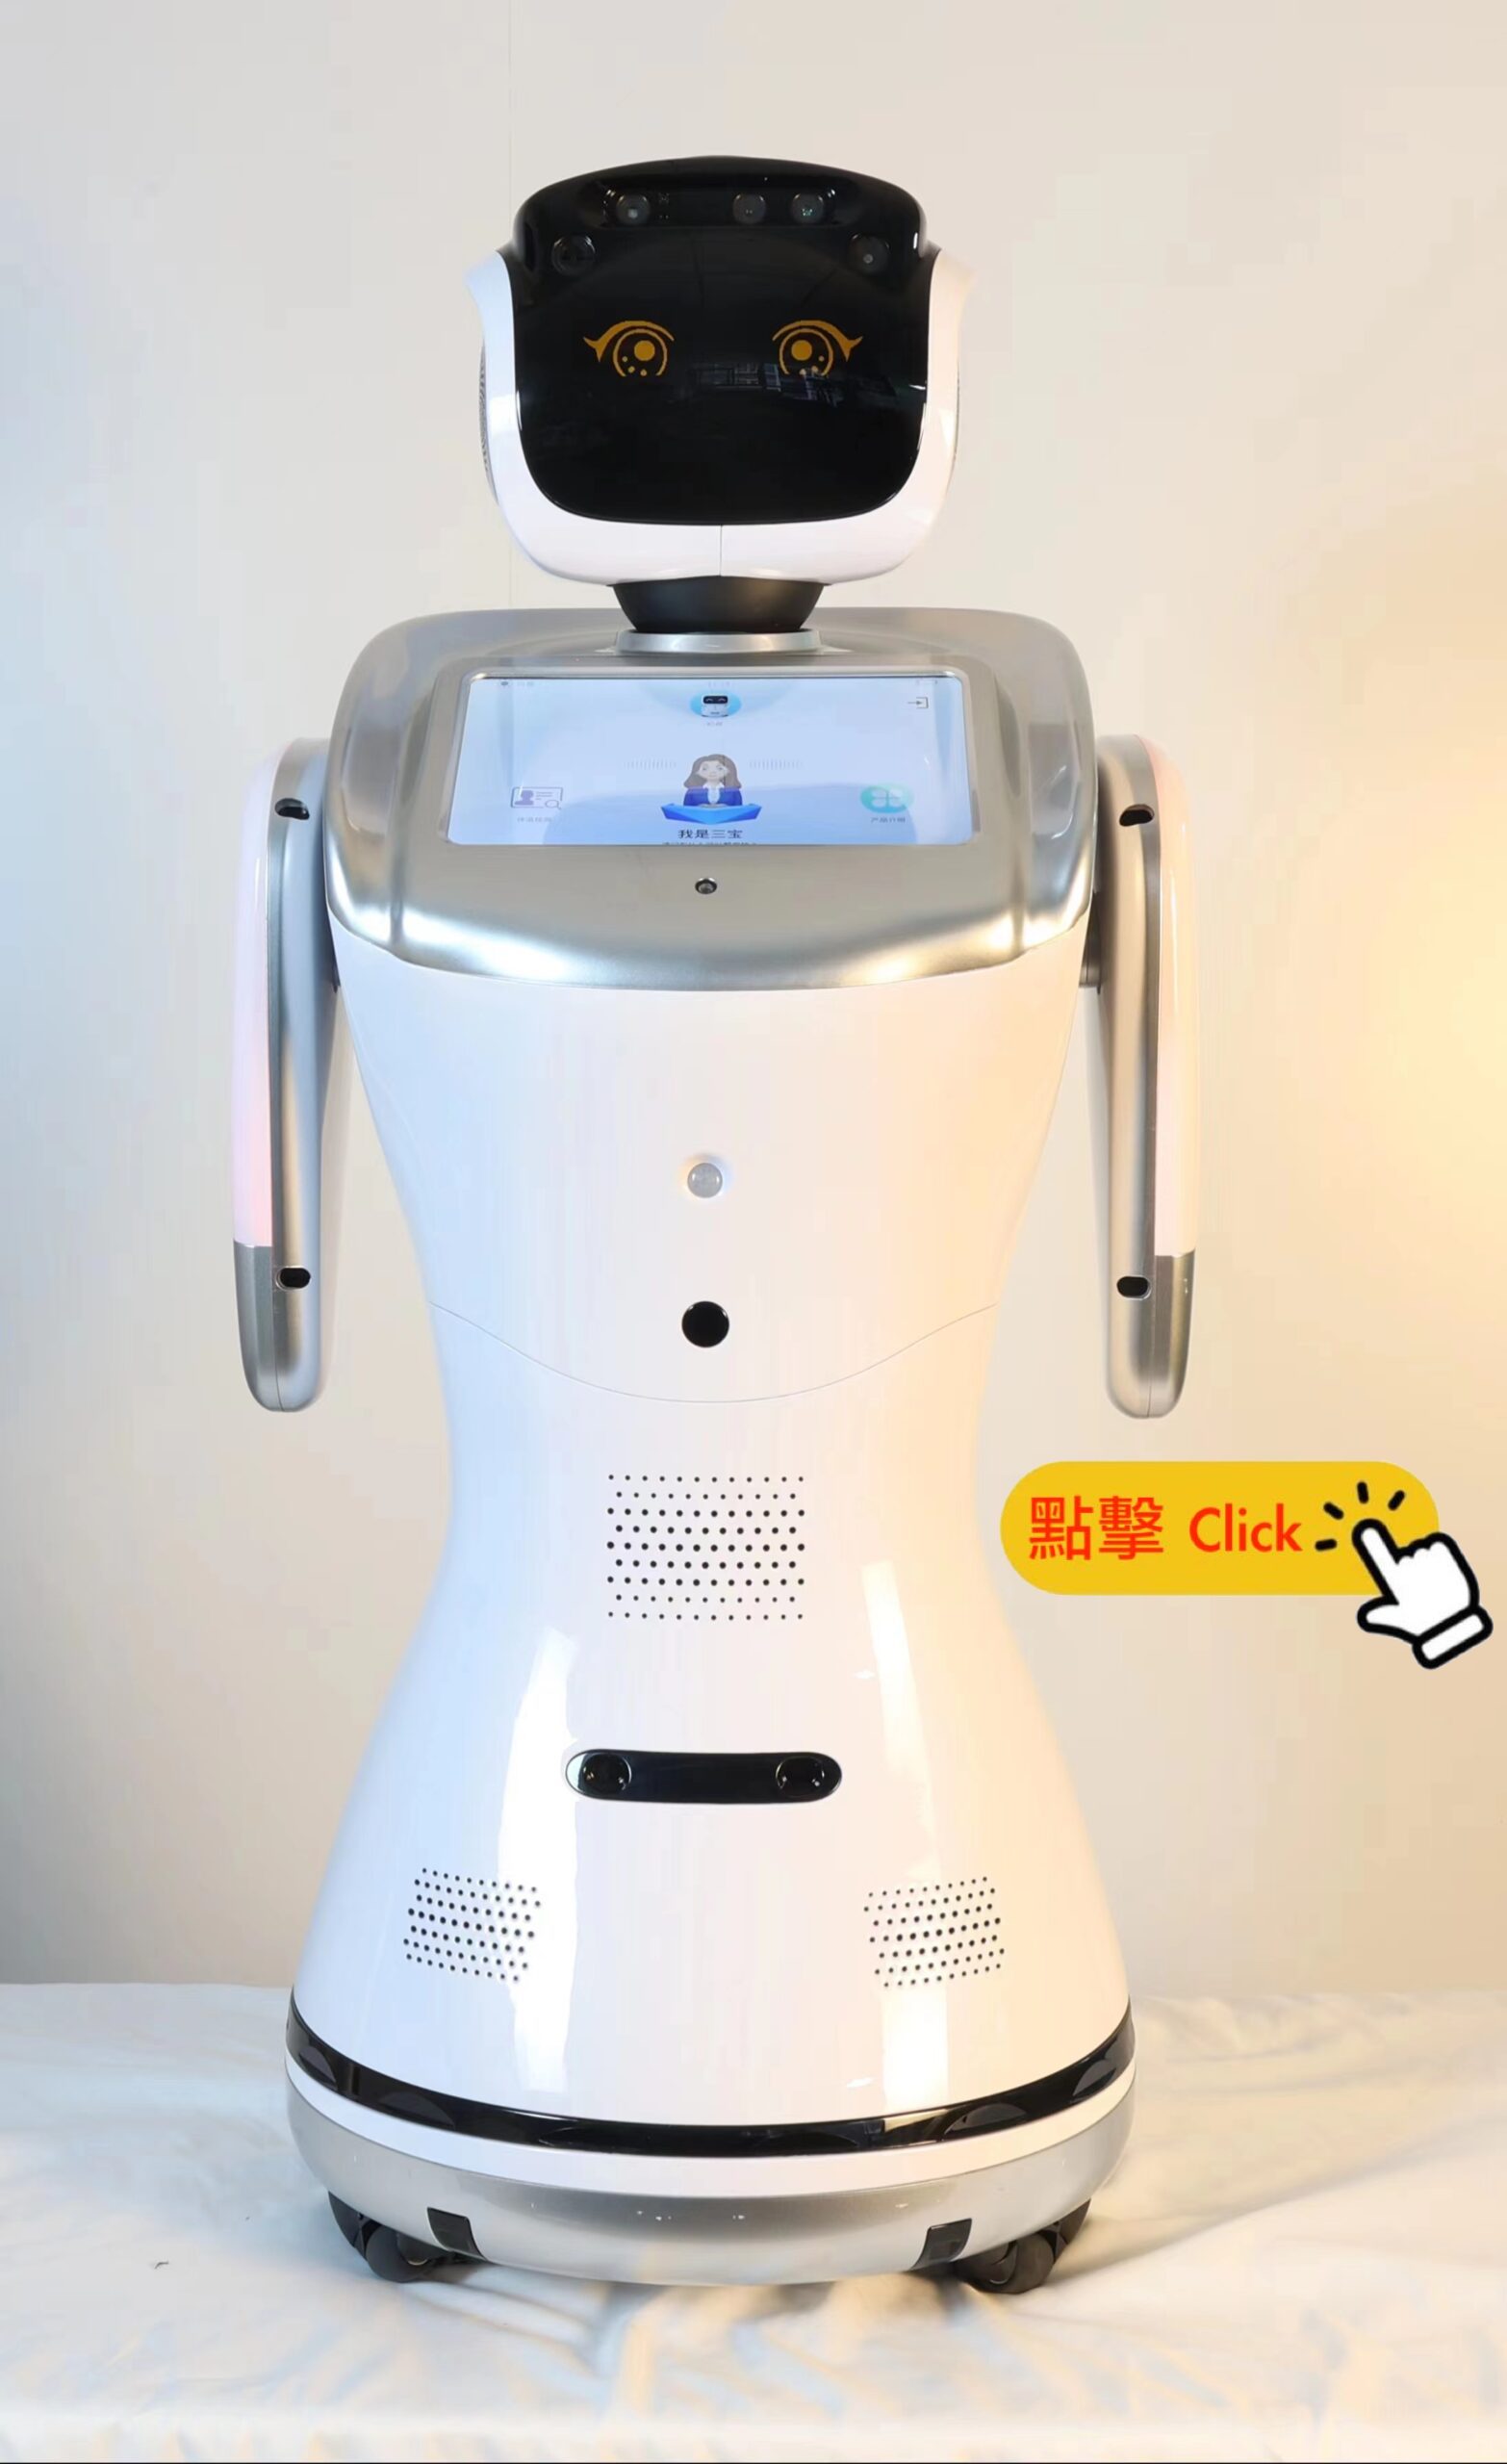 AI RobotX 三寶智能機械人 (國際開發版 – 即: 香港國際版 支援廣東話丶英語丶日語及其它加強功能等的開發)